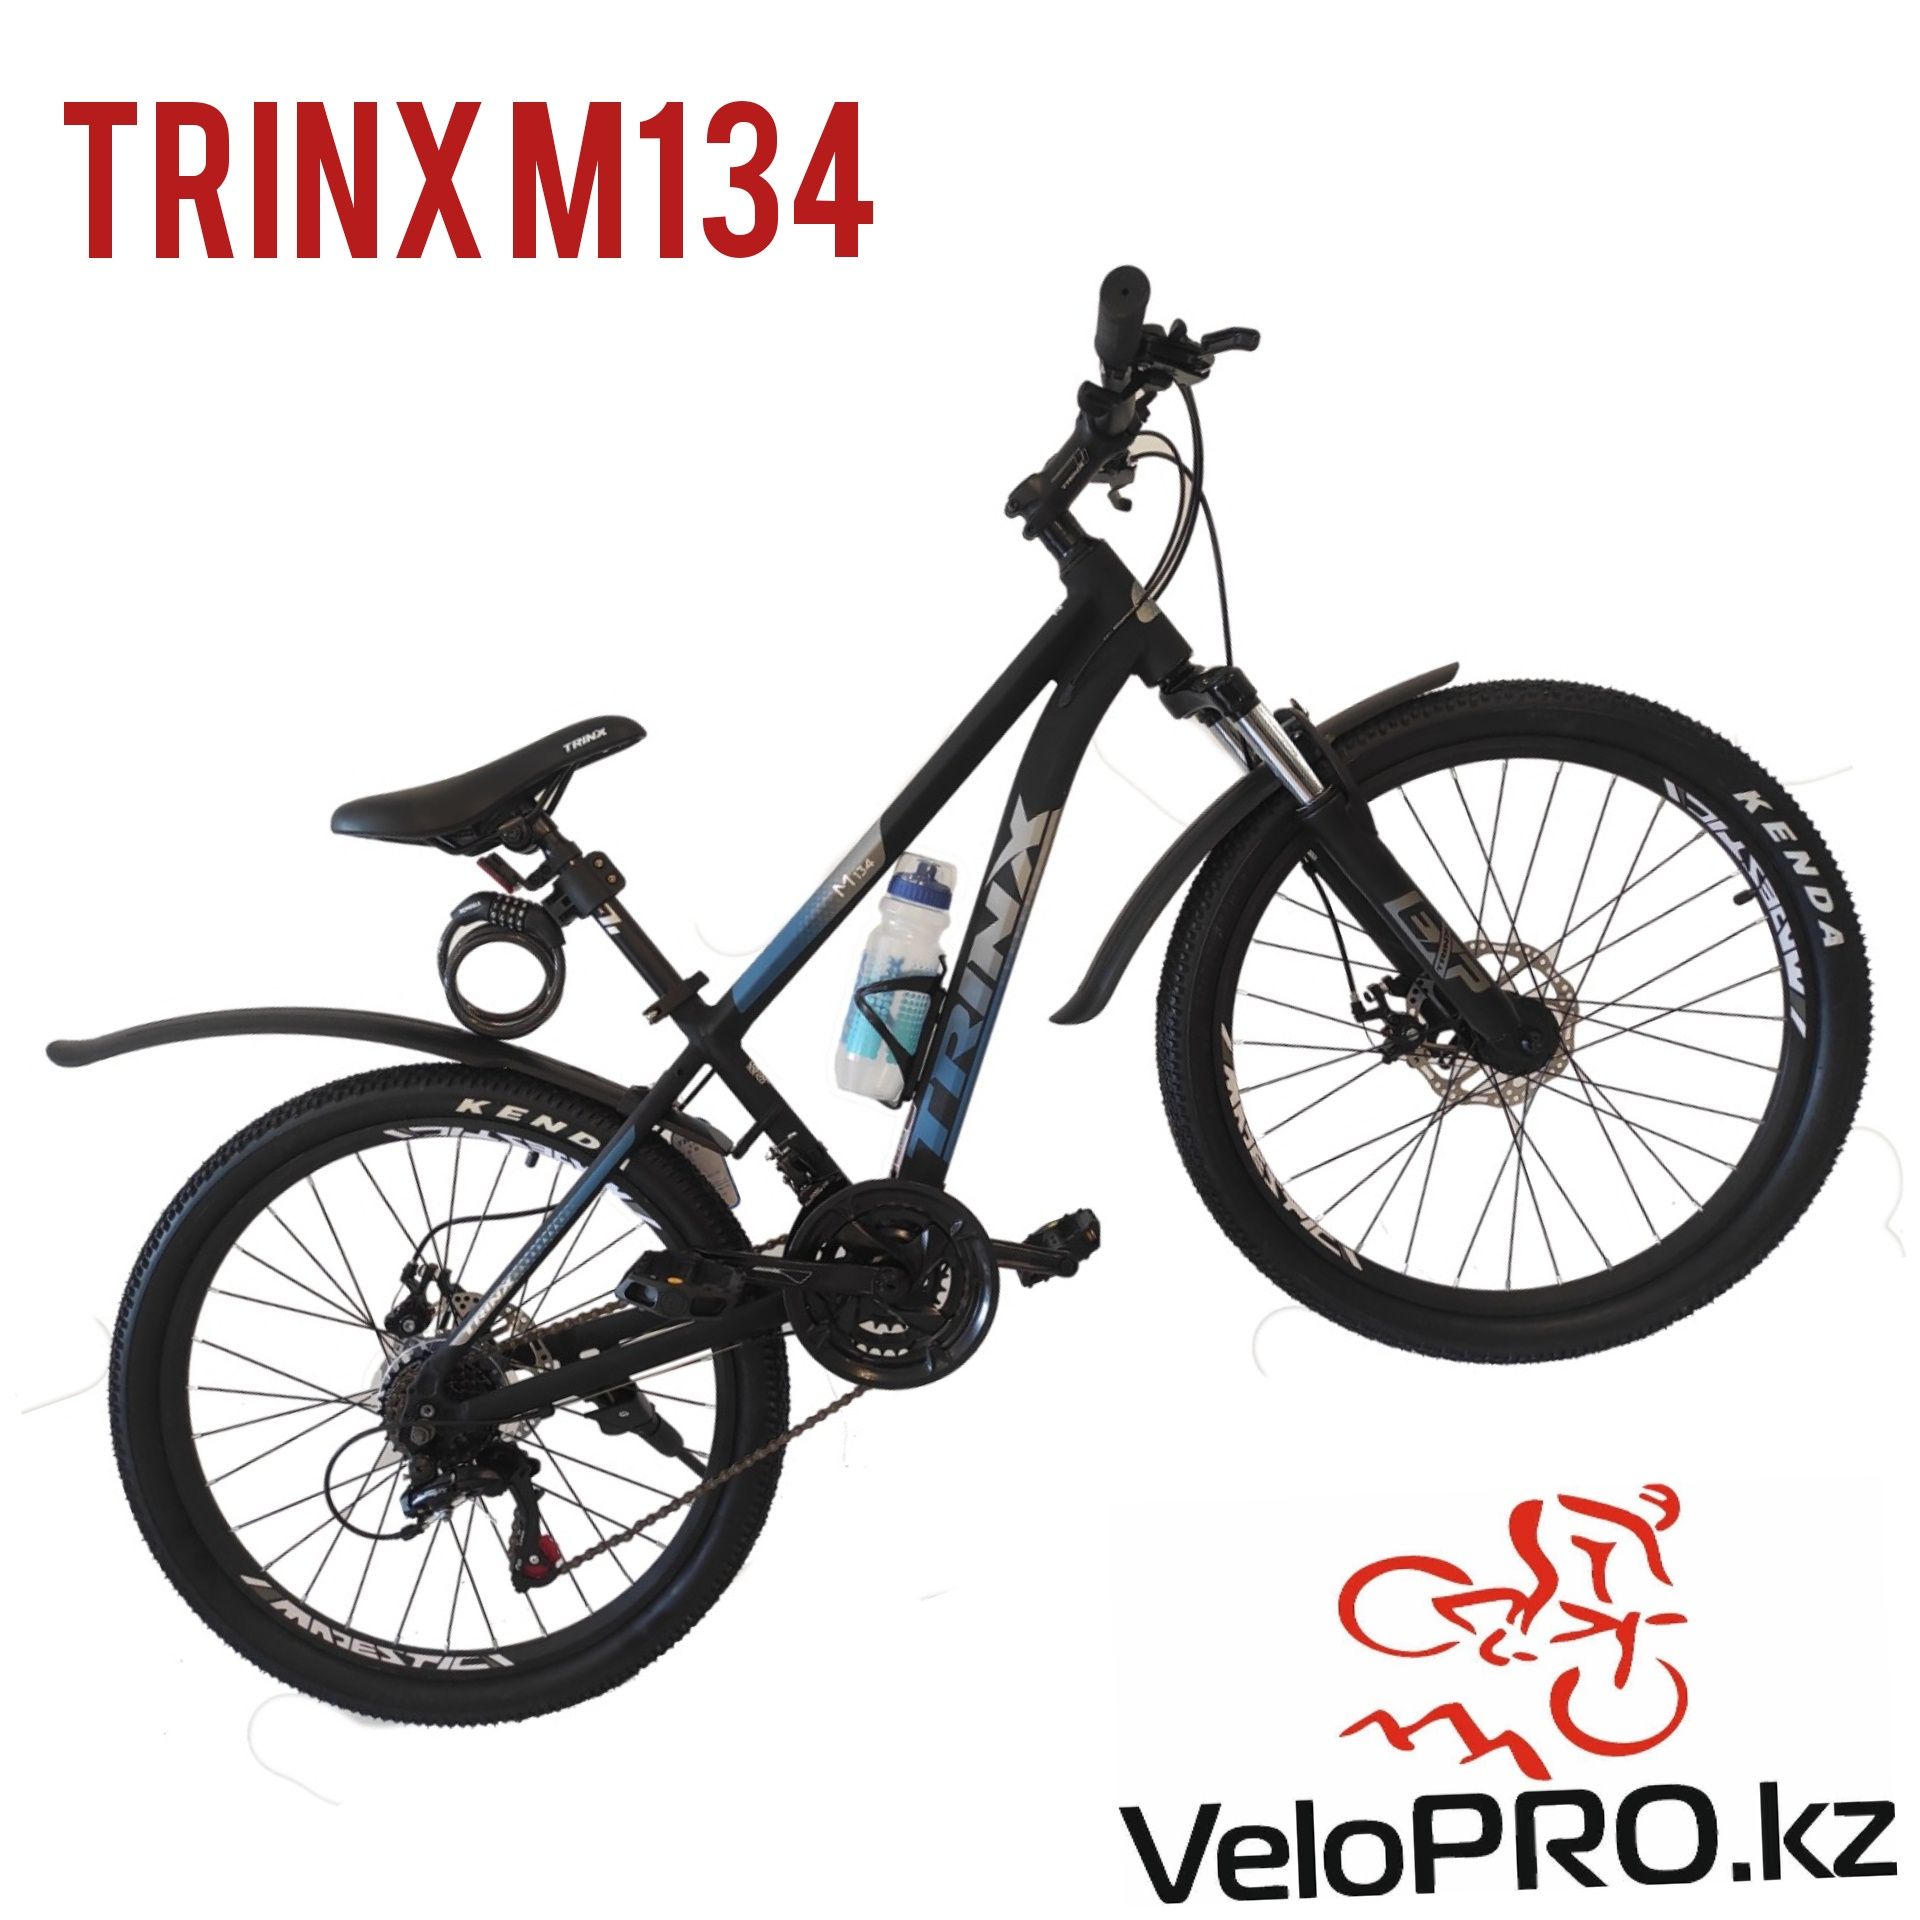 Велосипед подростковый Trinx m134. Рама 13", колеса 24". Рассрочка.